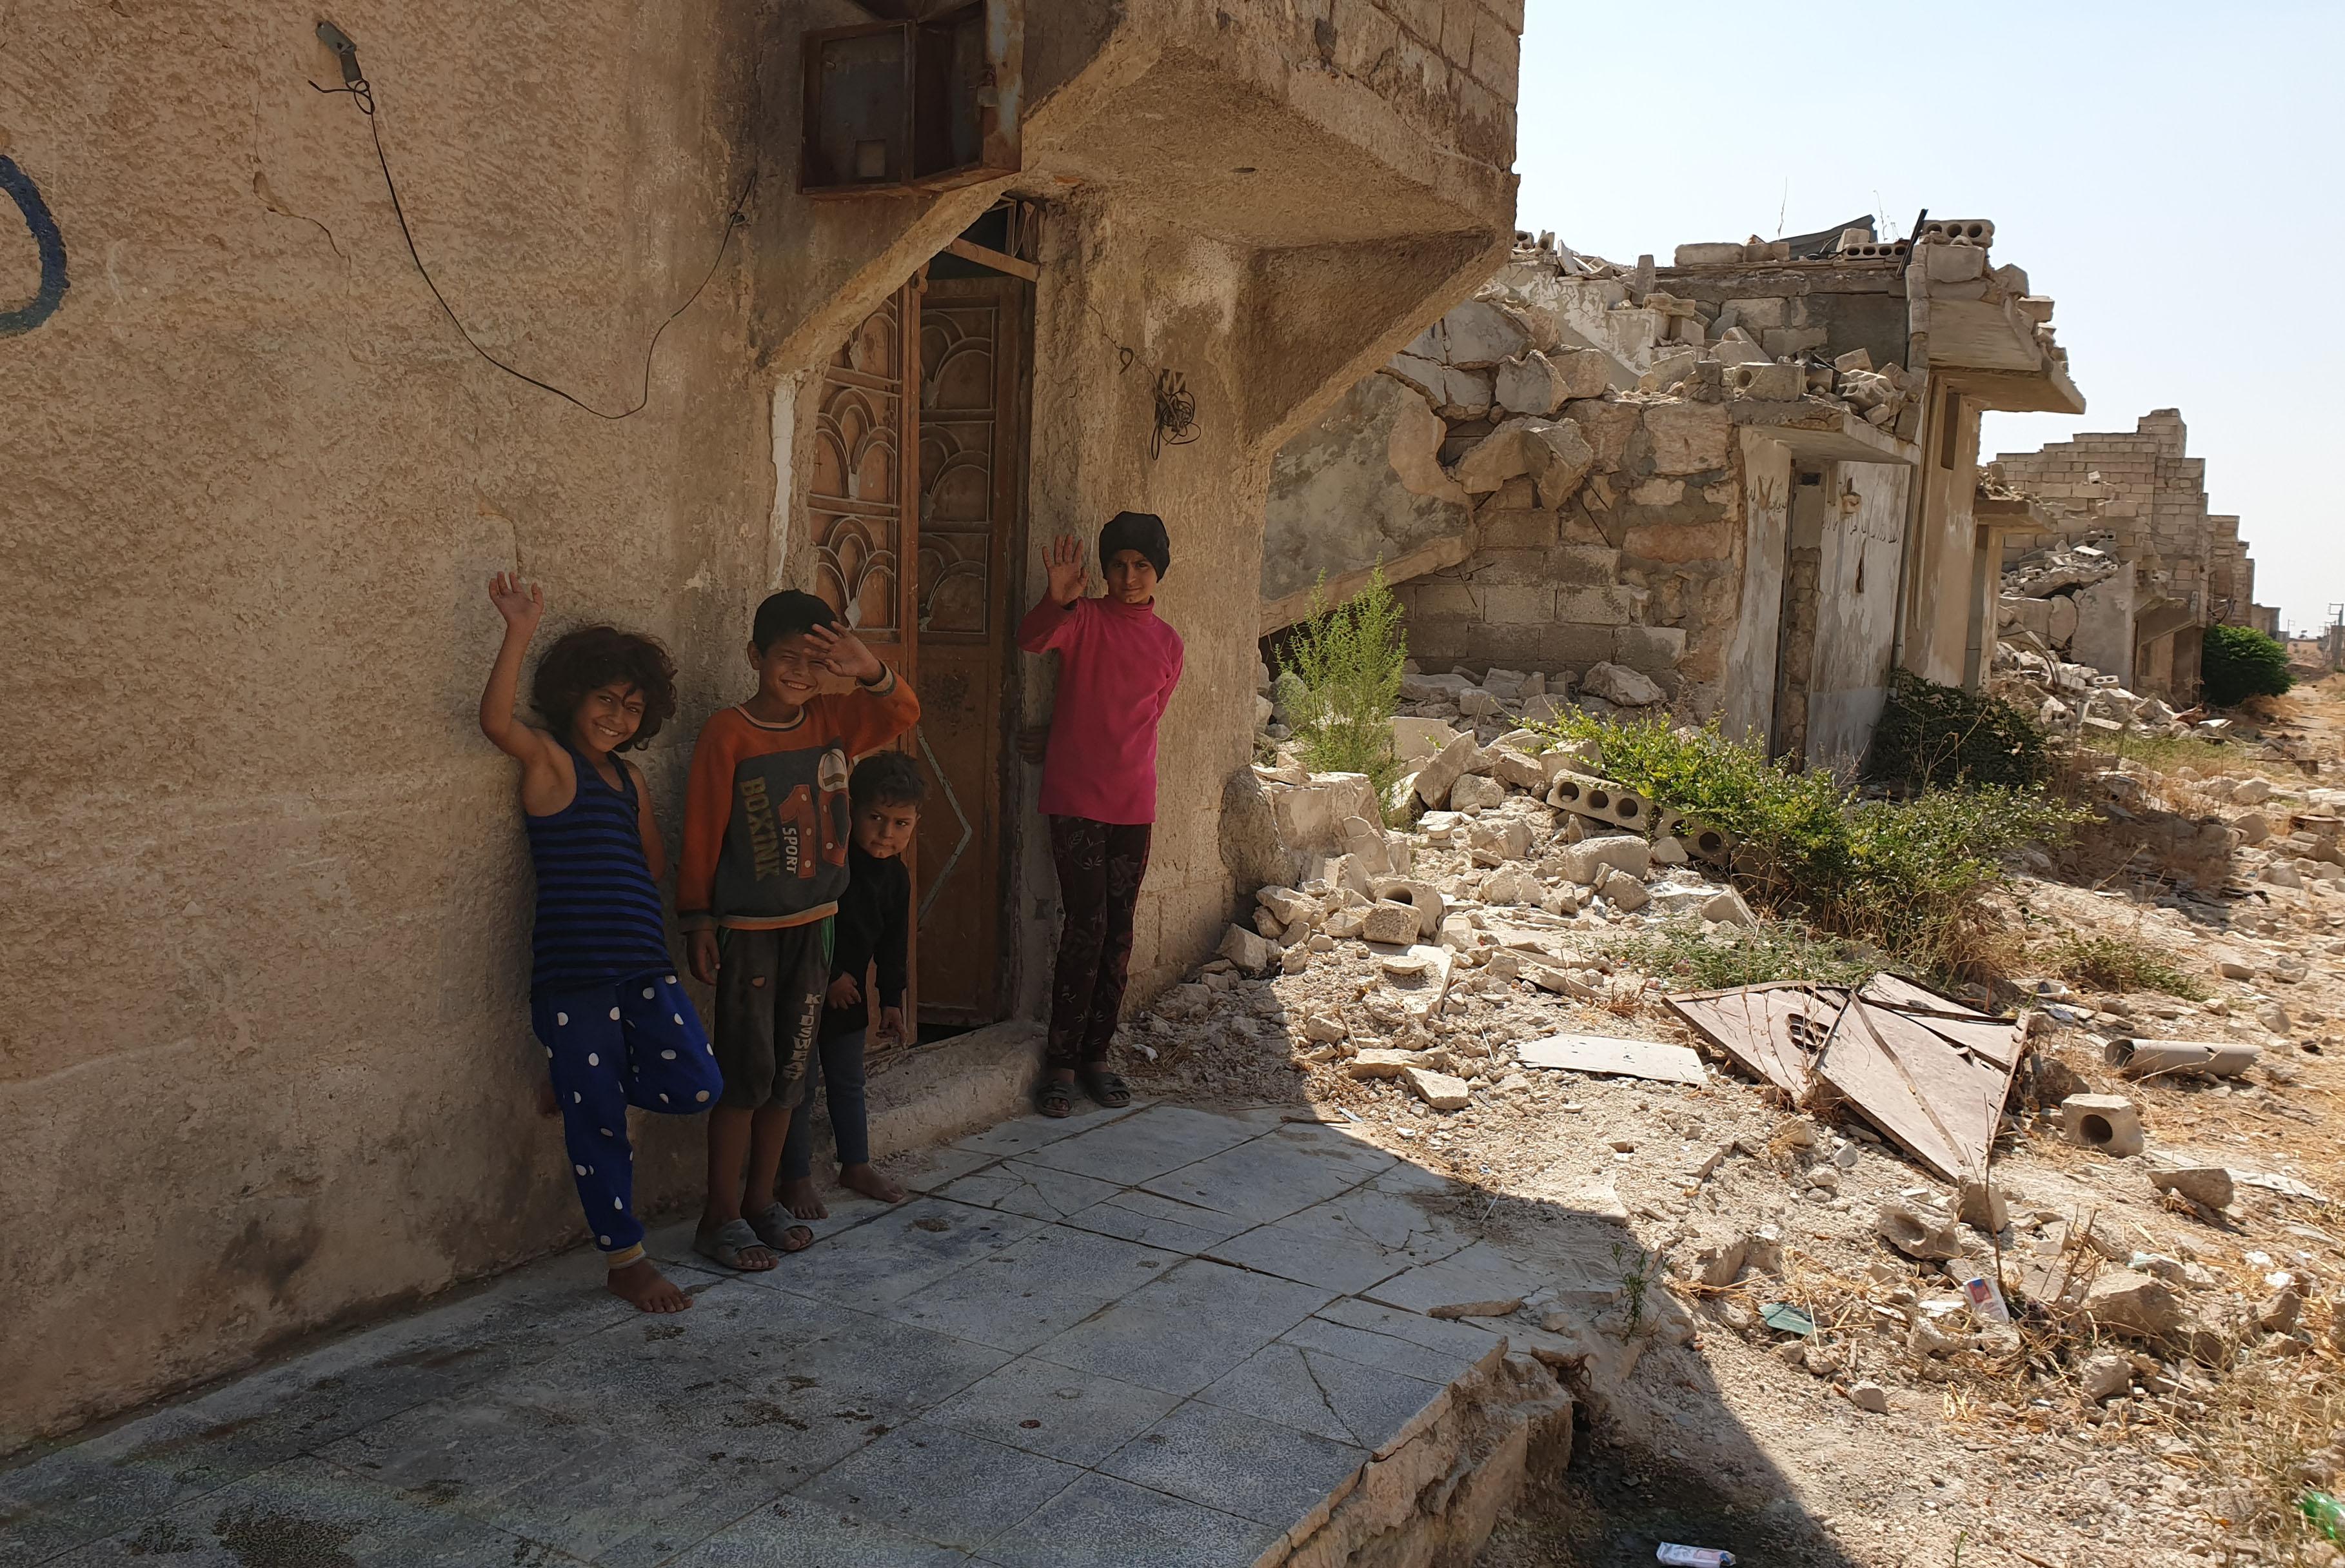 Children play in the destroyed suburbs in Aleppo. Photo: LWF/ R. Schlott